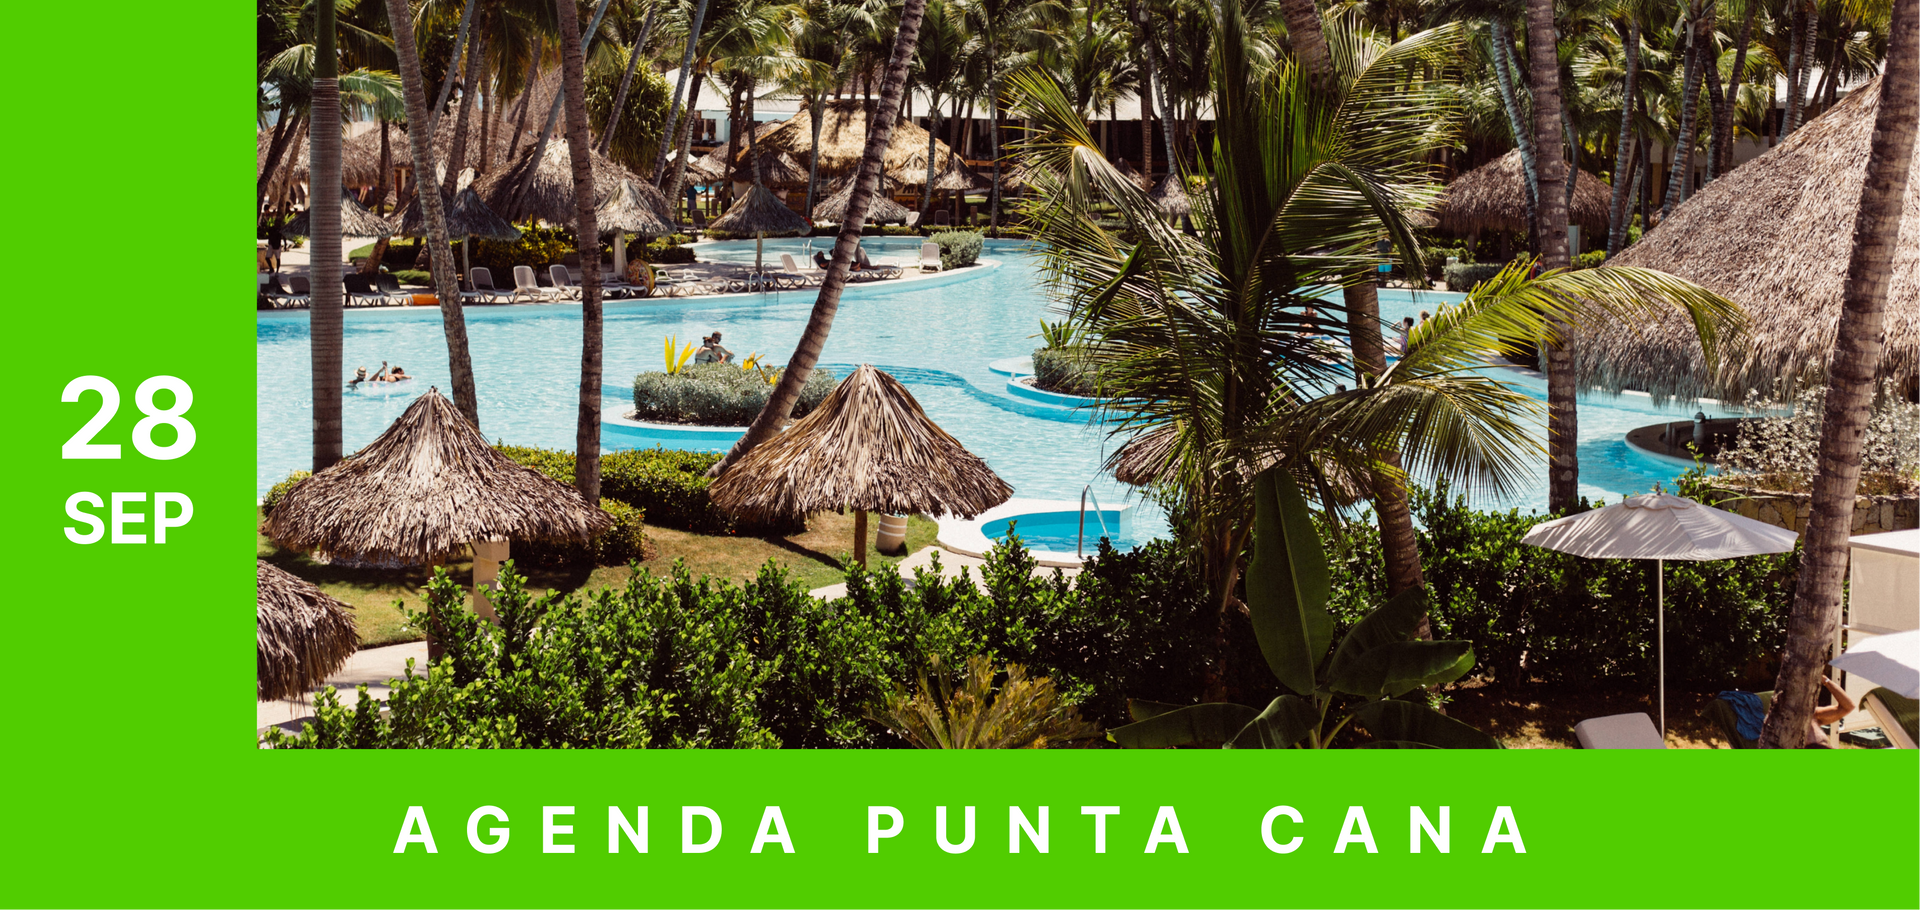 Un cartel de agenda punta cana muestra una piscina rodeada de palmeras.